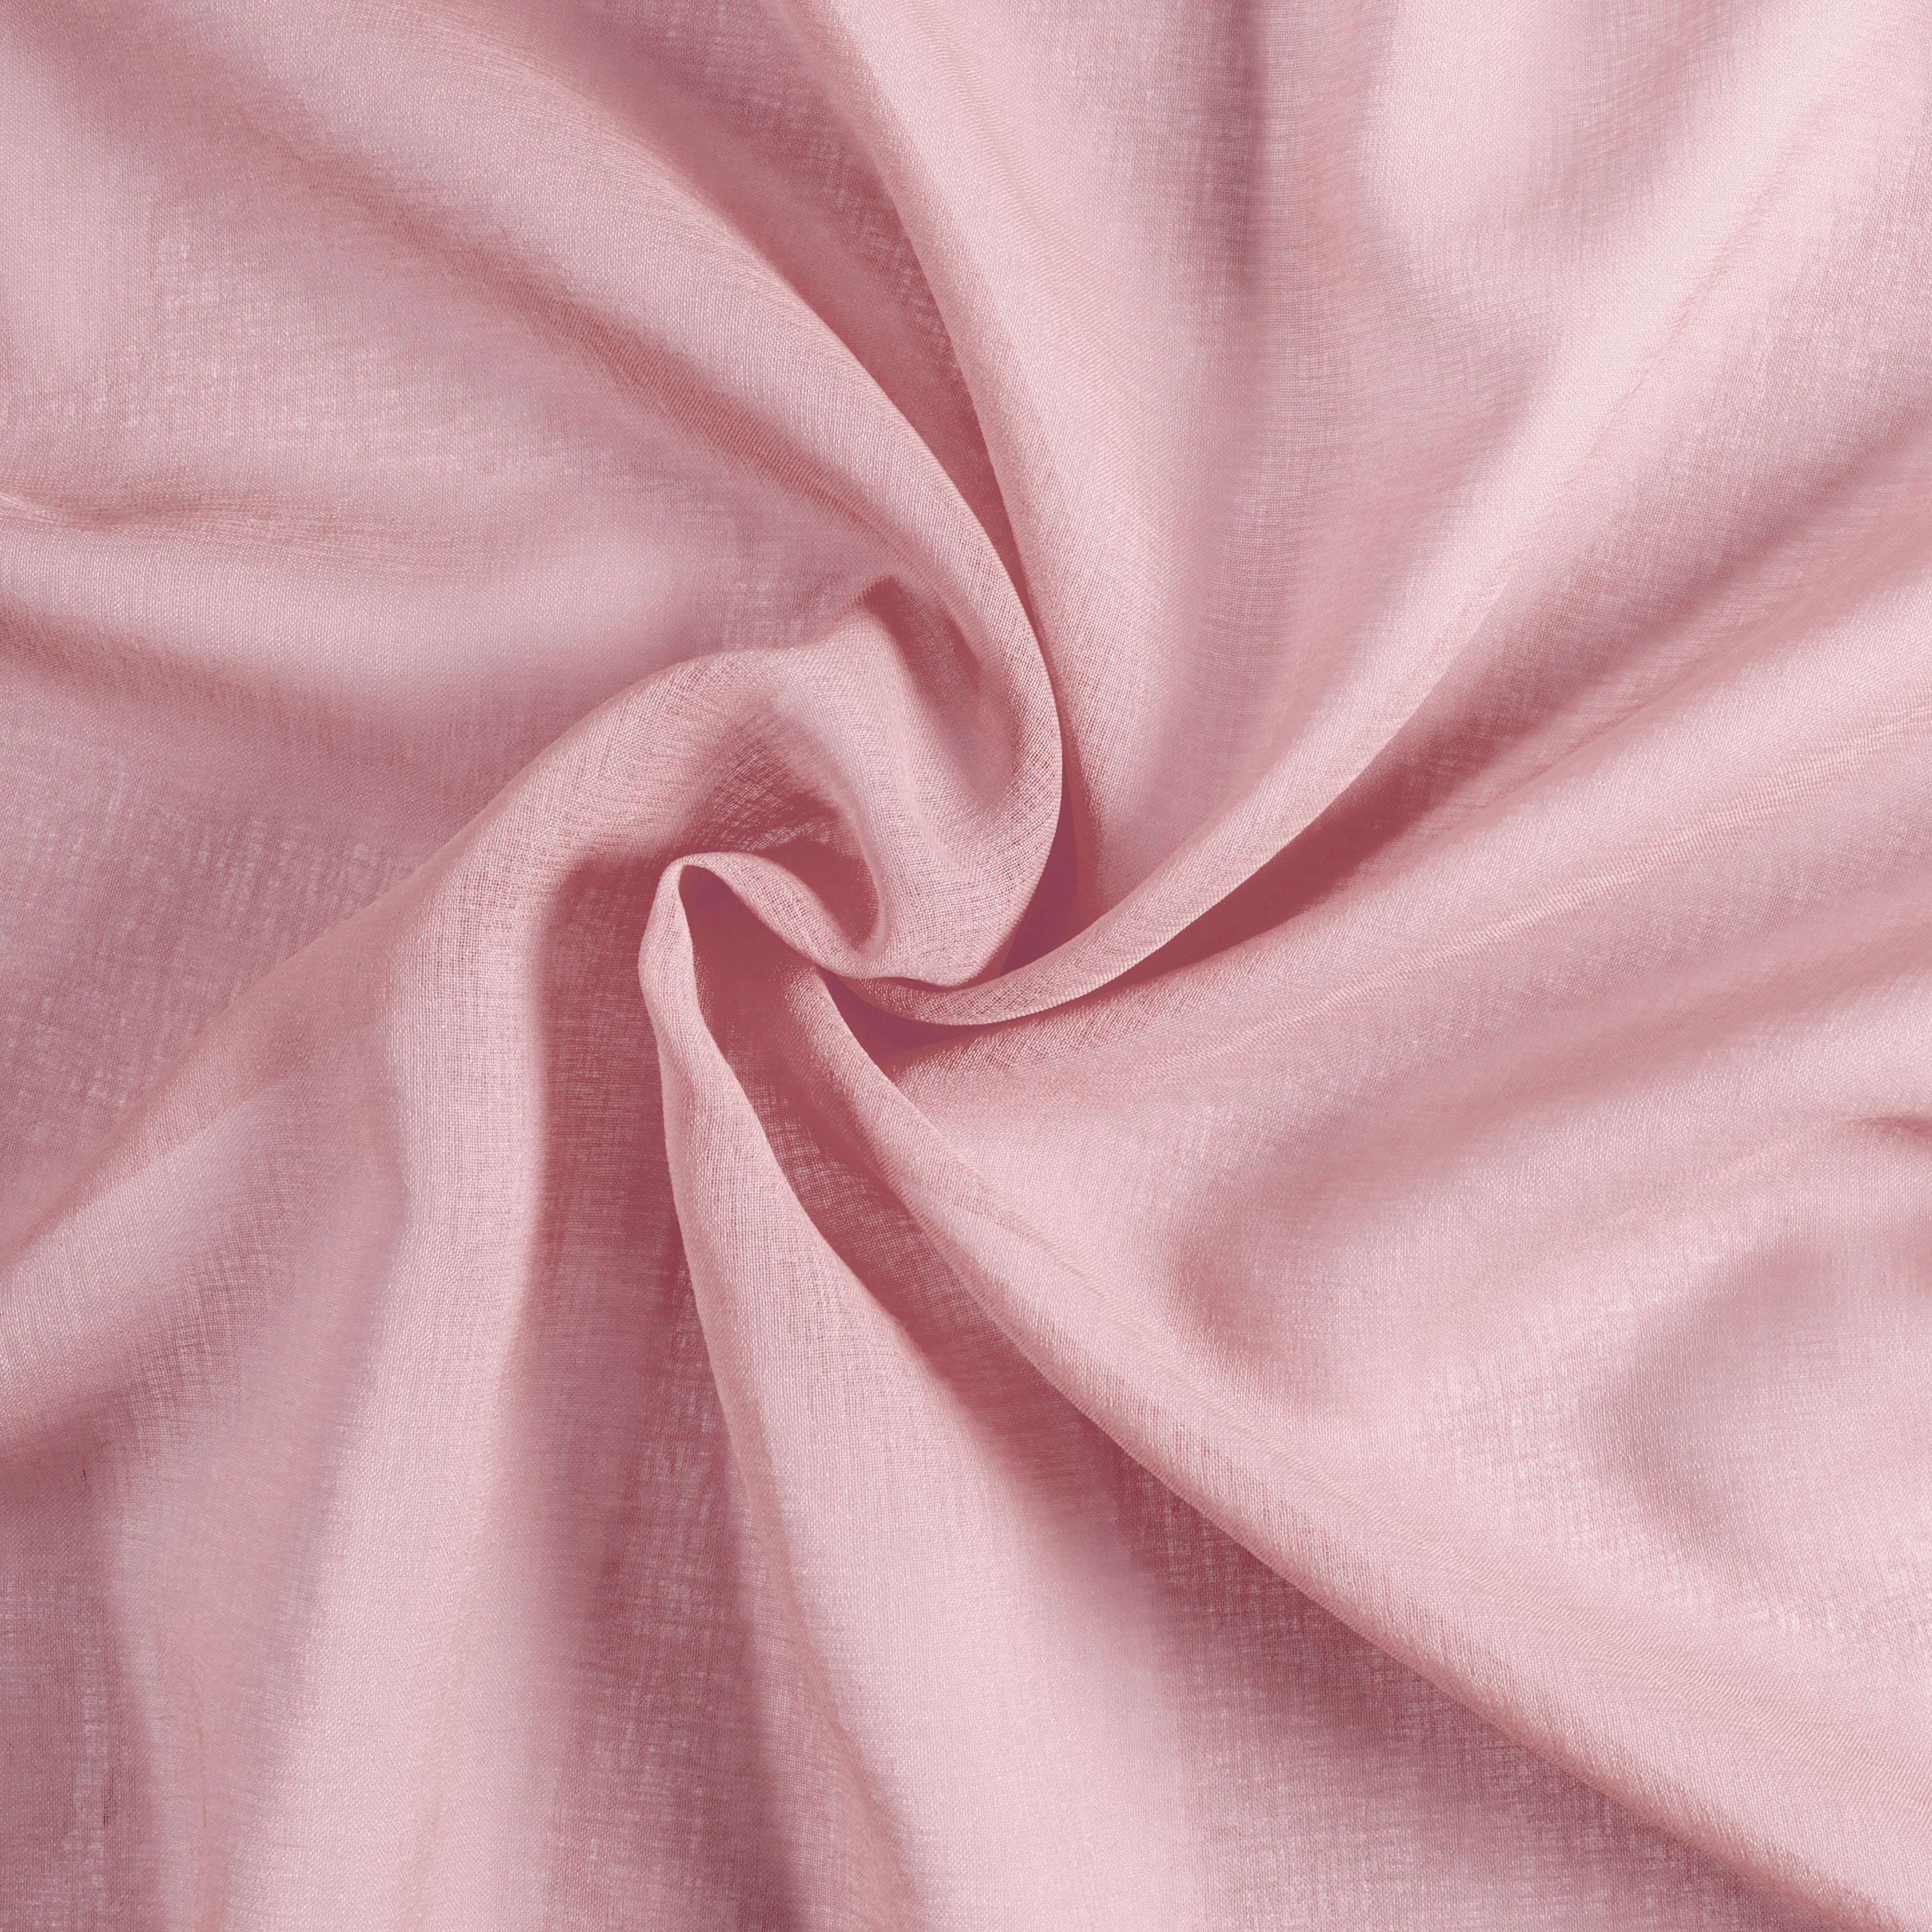 Hotový Závěs Tosca, 2x140/245cm, Růžová - starorůžová, textil (140/245cm) - Modern Living